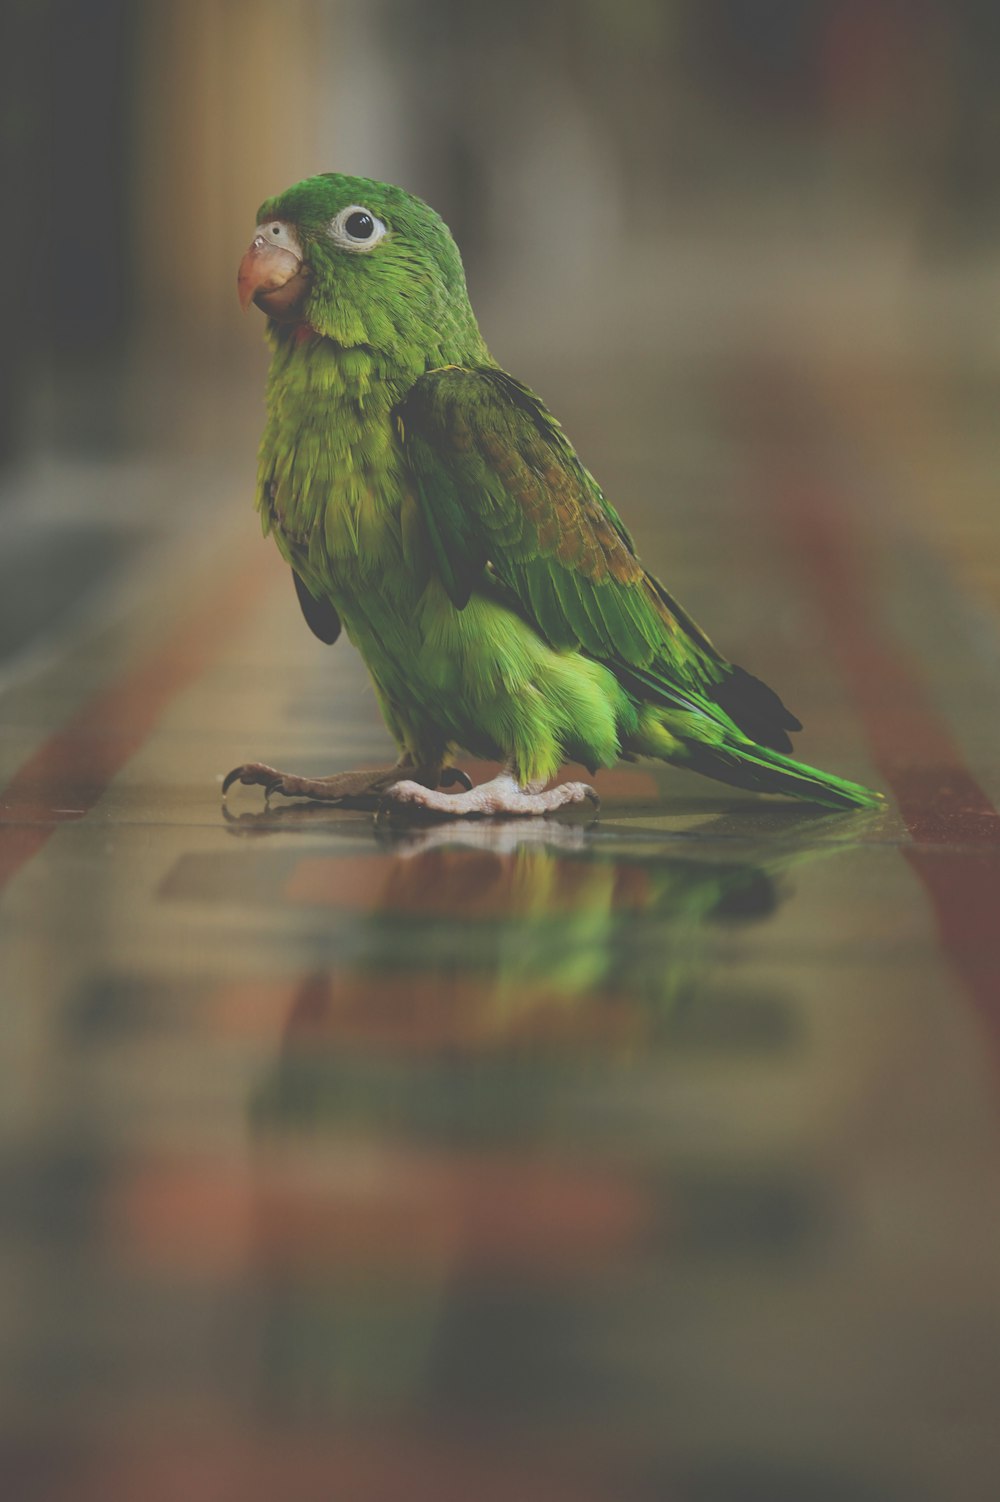 Grüner Vogel steht auf brauner Oberfläche